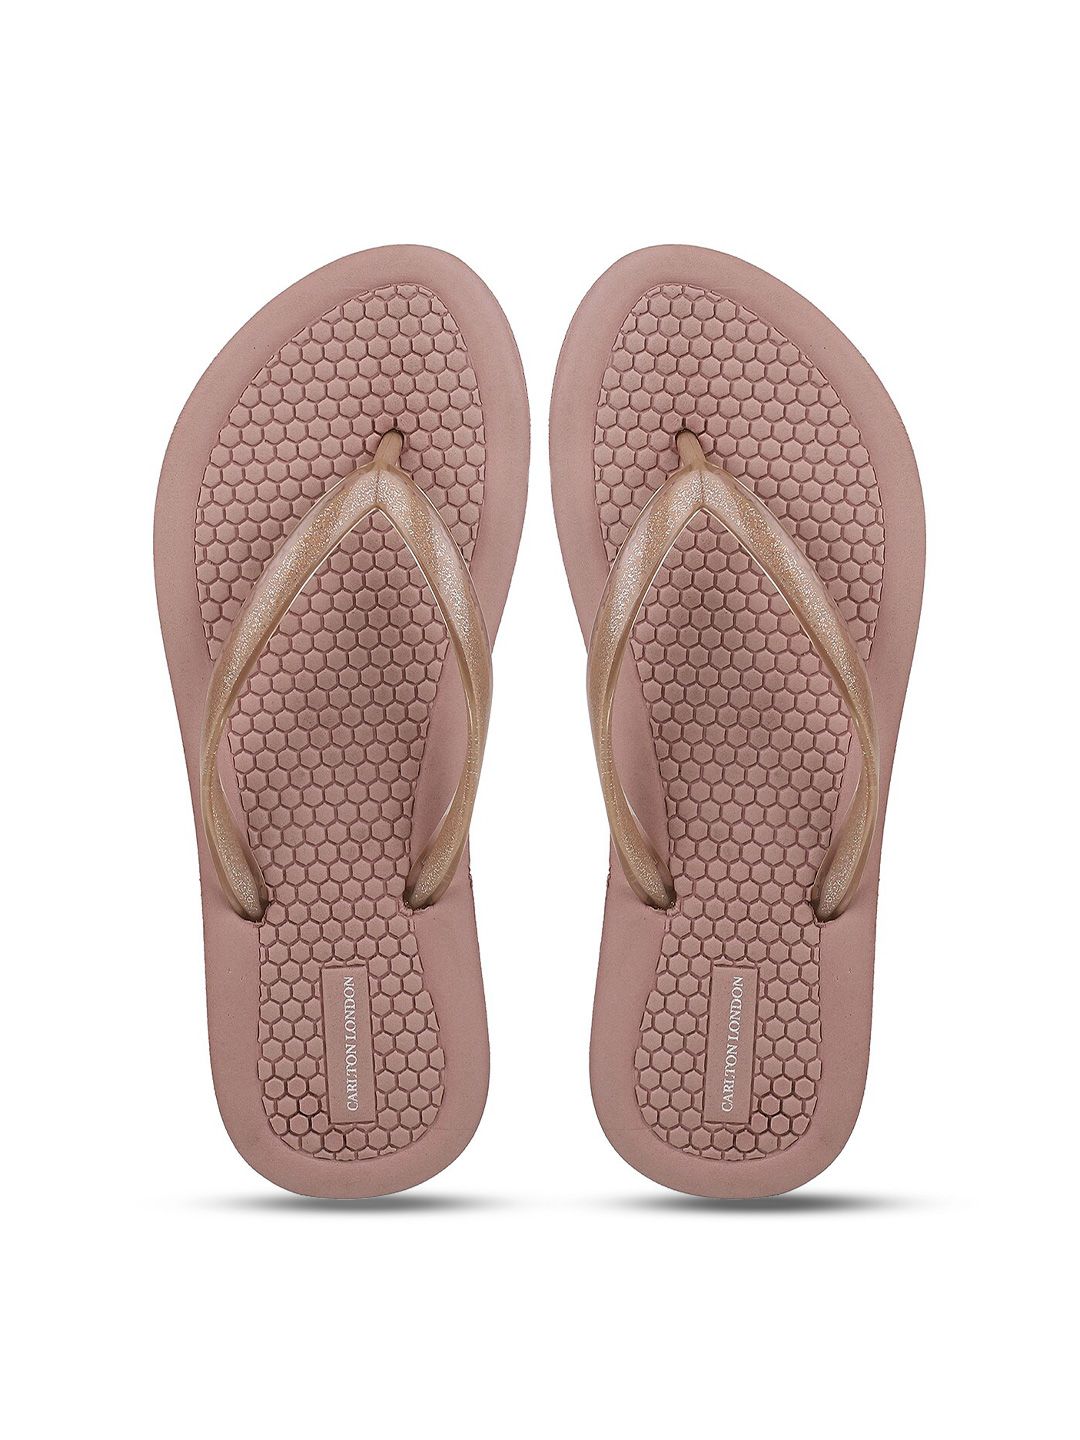 Carlton London Woman Pink Thong Flip-Flops Price in India